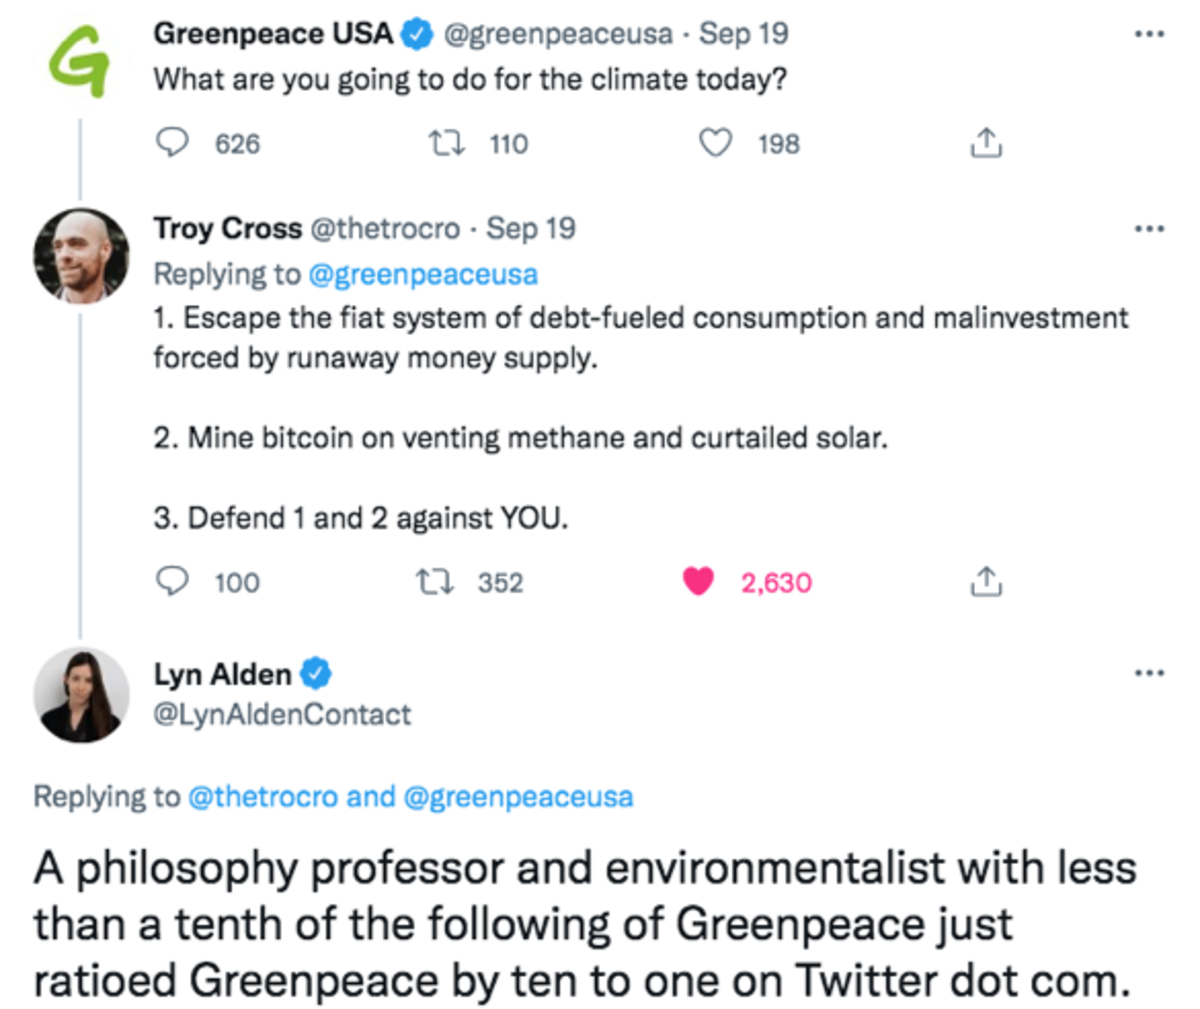 USA Greenpeace'i kampaania "Change The Code" ajal paljastatud desinformatsioon aitas ainult Bitcoini kogukonna meelitada.